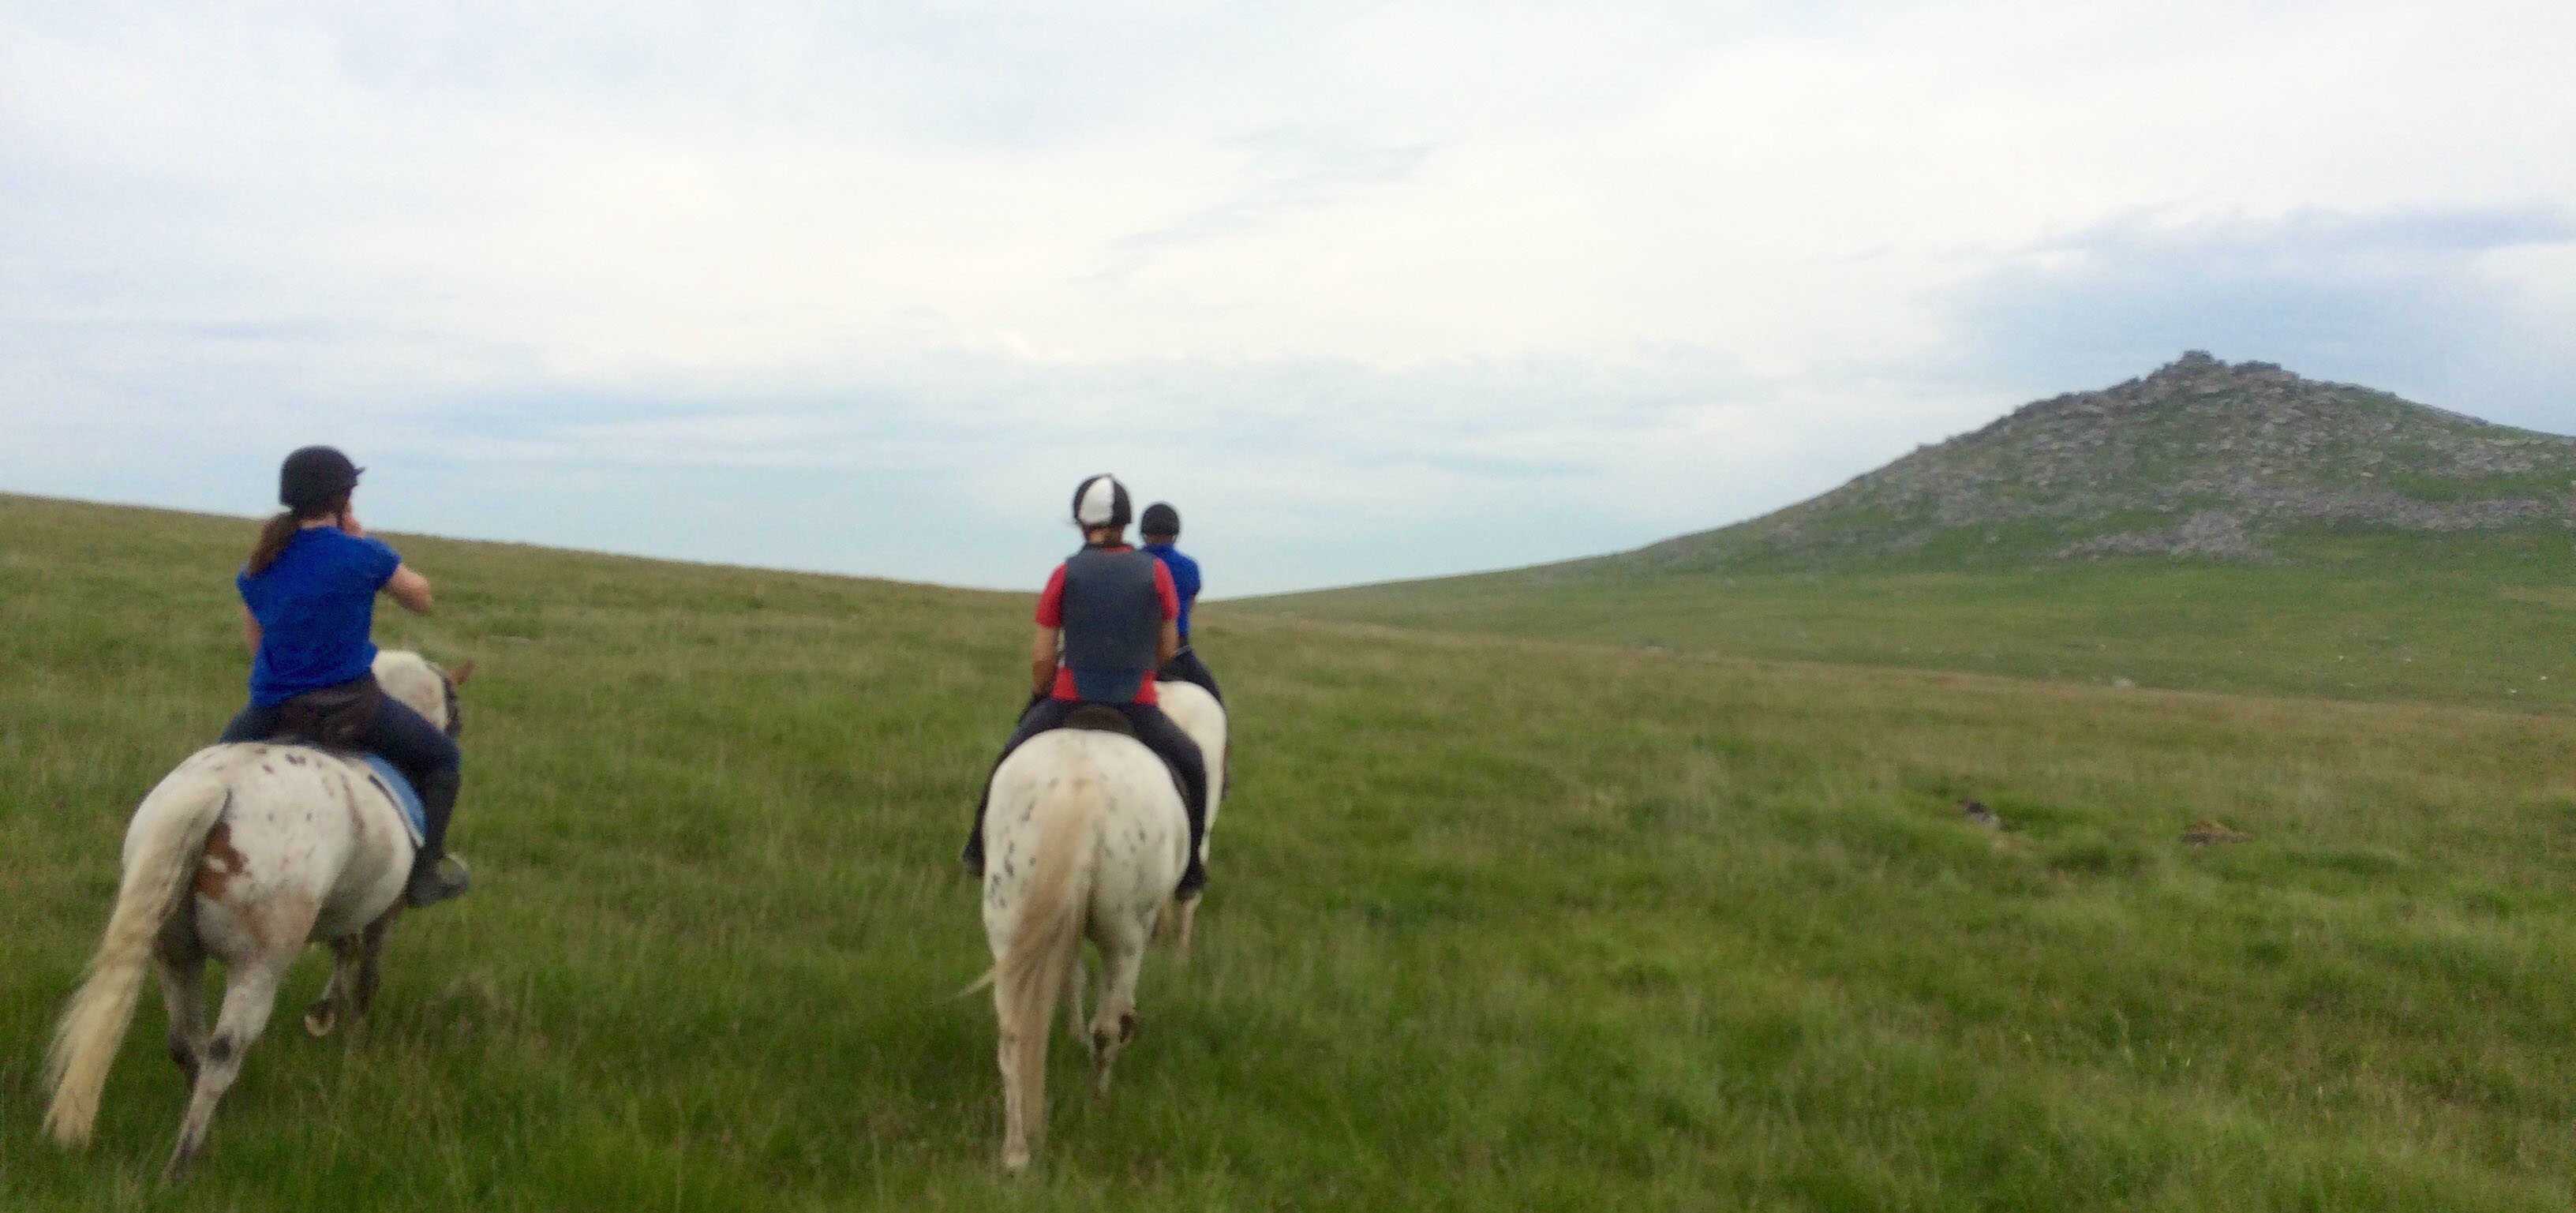 Poldark Trail with Hallagenna Riding School